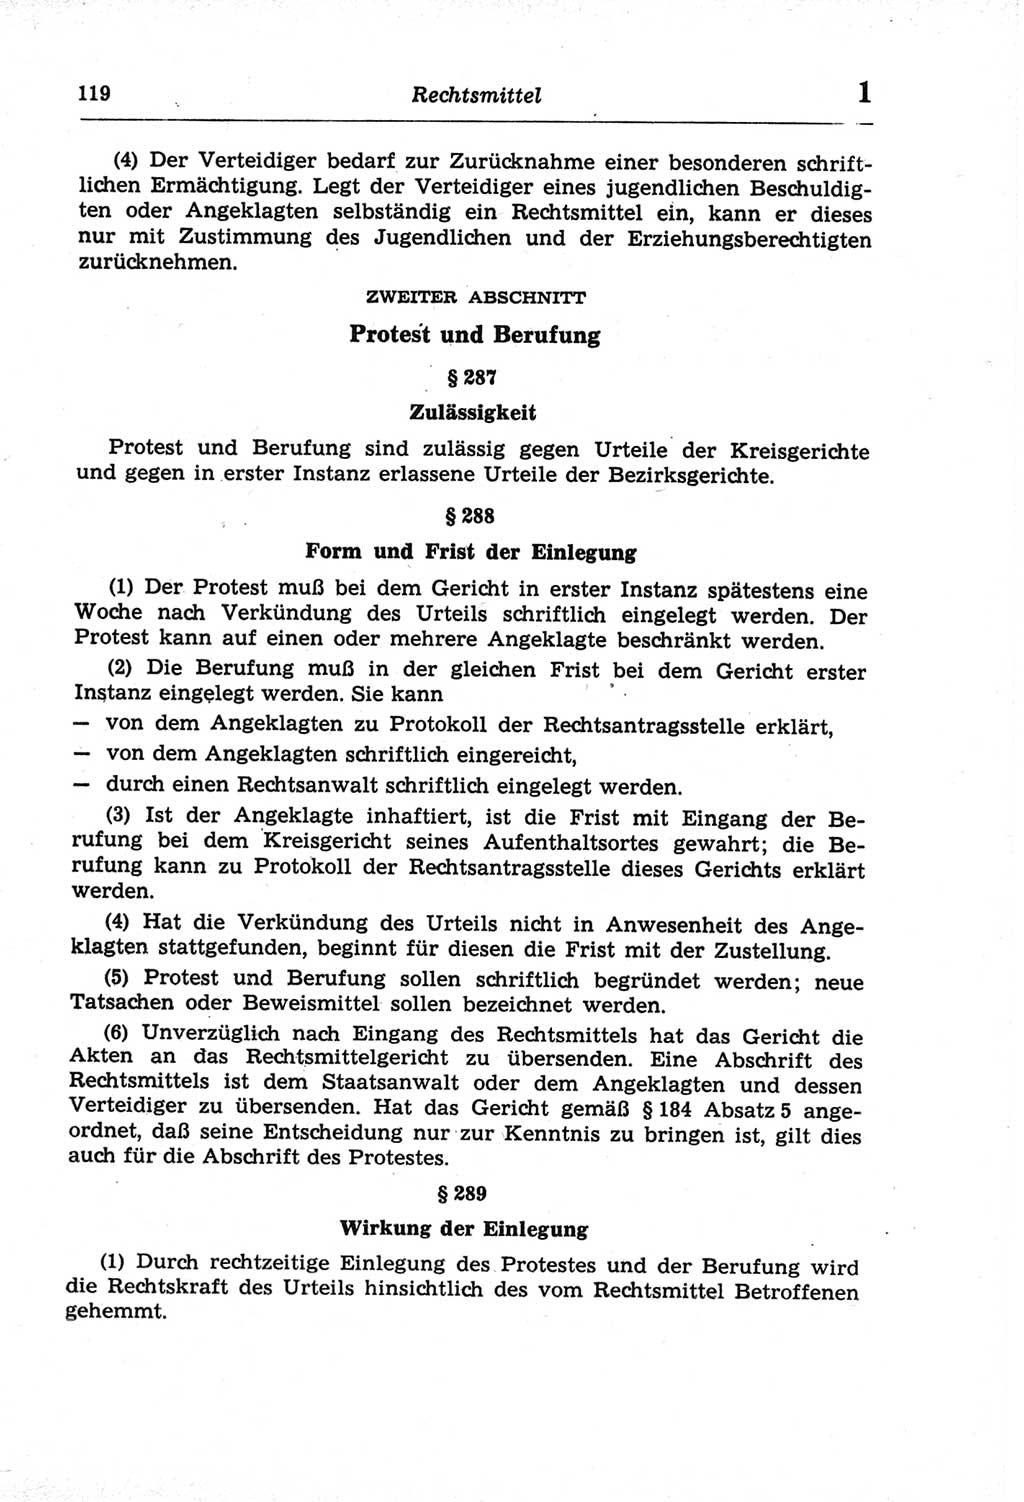 Strafprozeßordnung (StPO) der Deutschen Demokratischen Republik (DDR) und angrenzende Gesetze und Bestimmungen 1968, Seite 119 (StPO Ges. Bstgn. DDR 1968, S. 119)